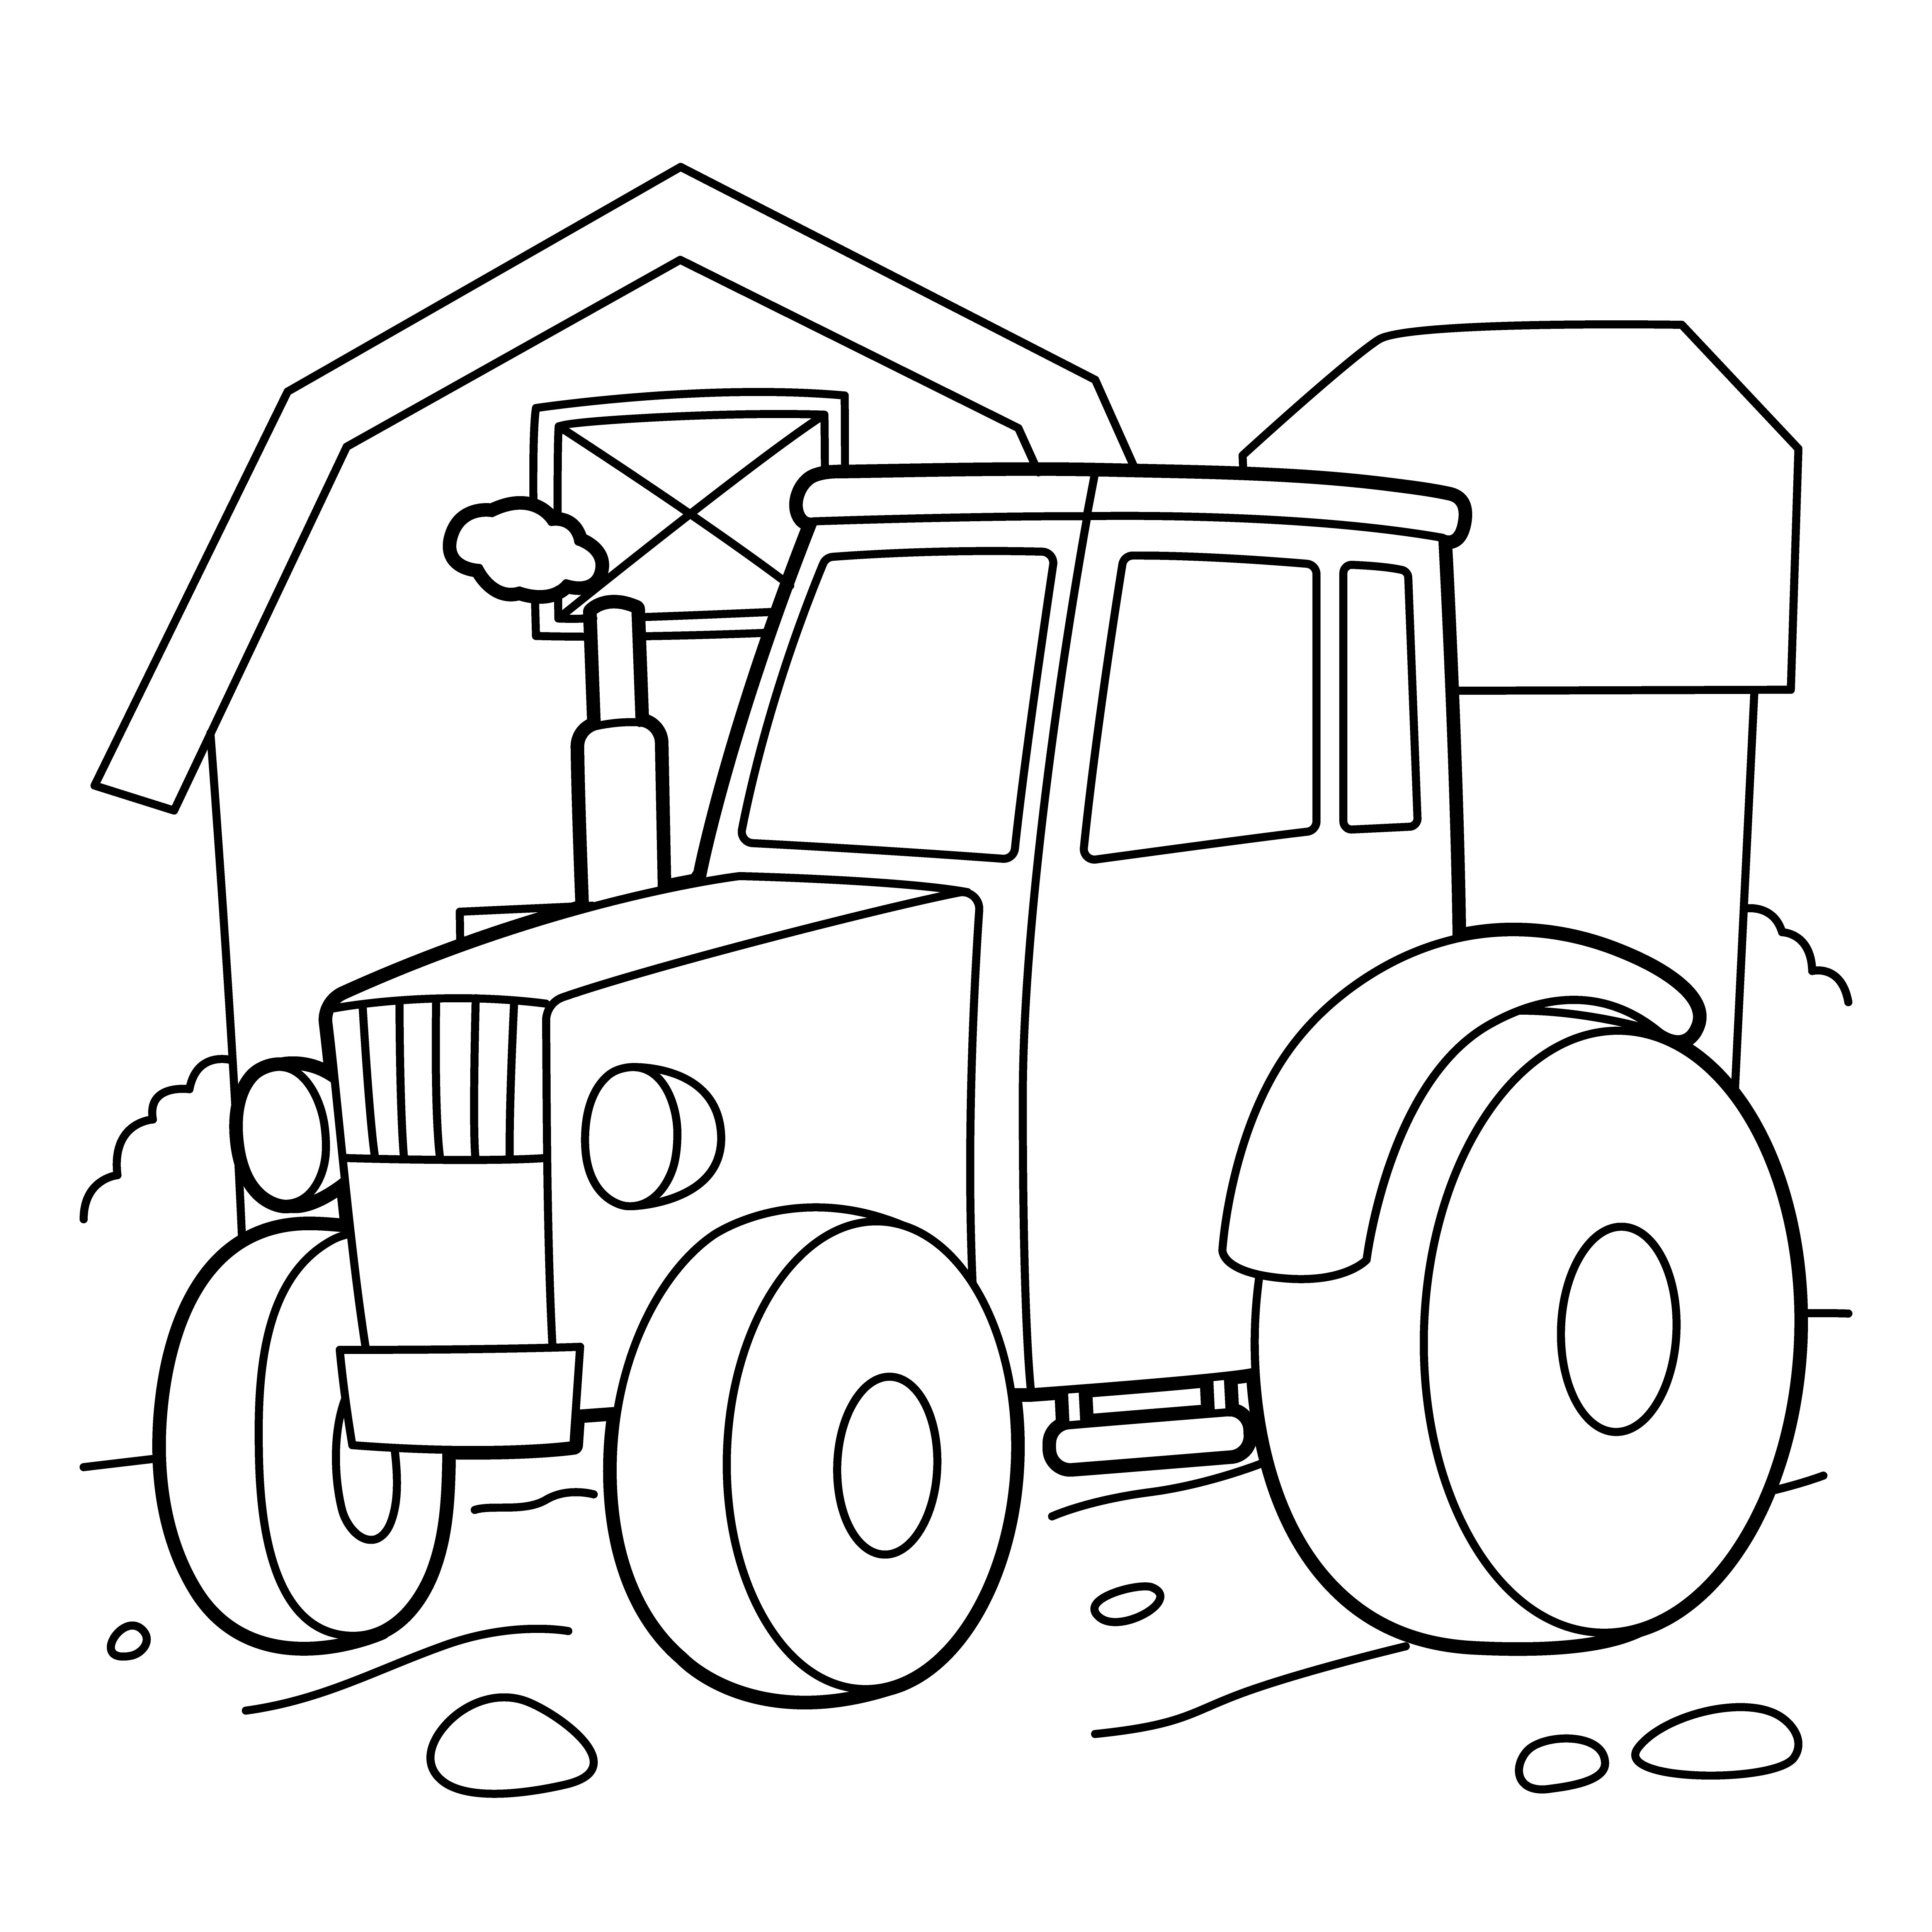 Раскраска трактор стоит на дроге у дома формата А4 в высоком качестве